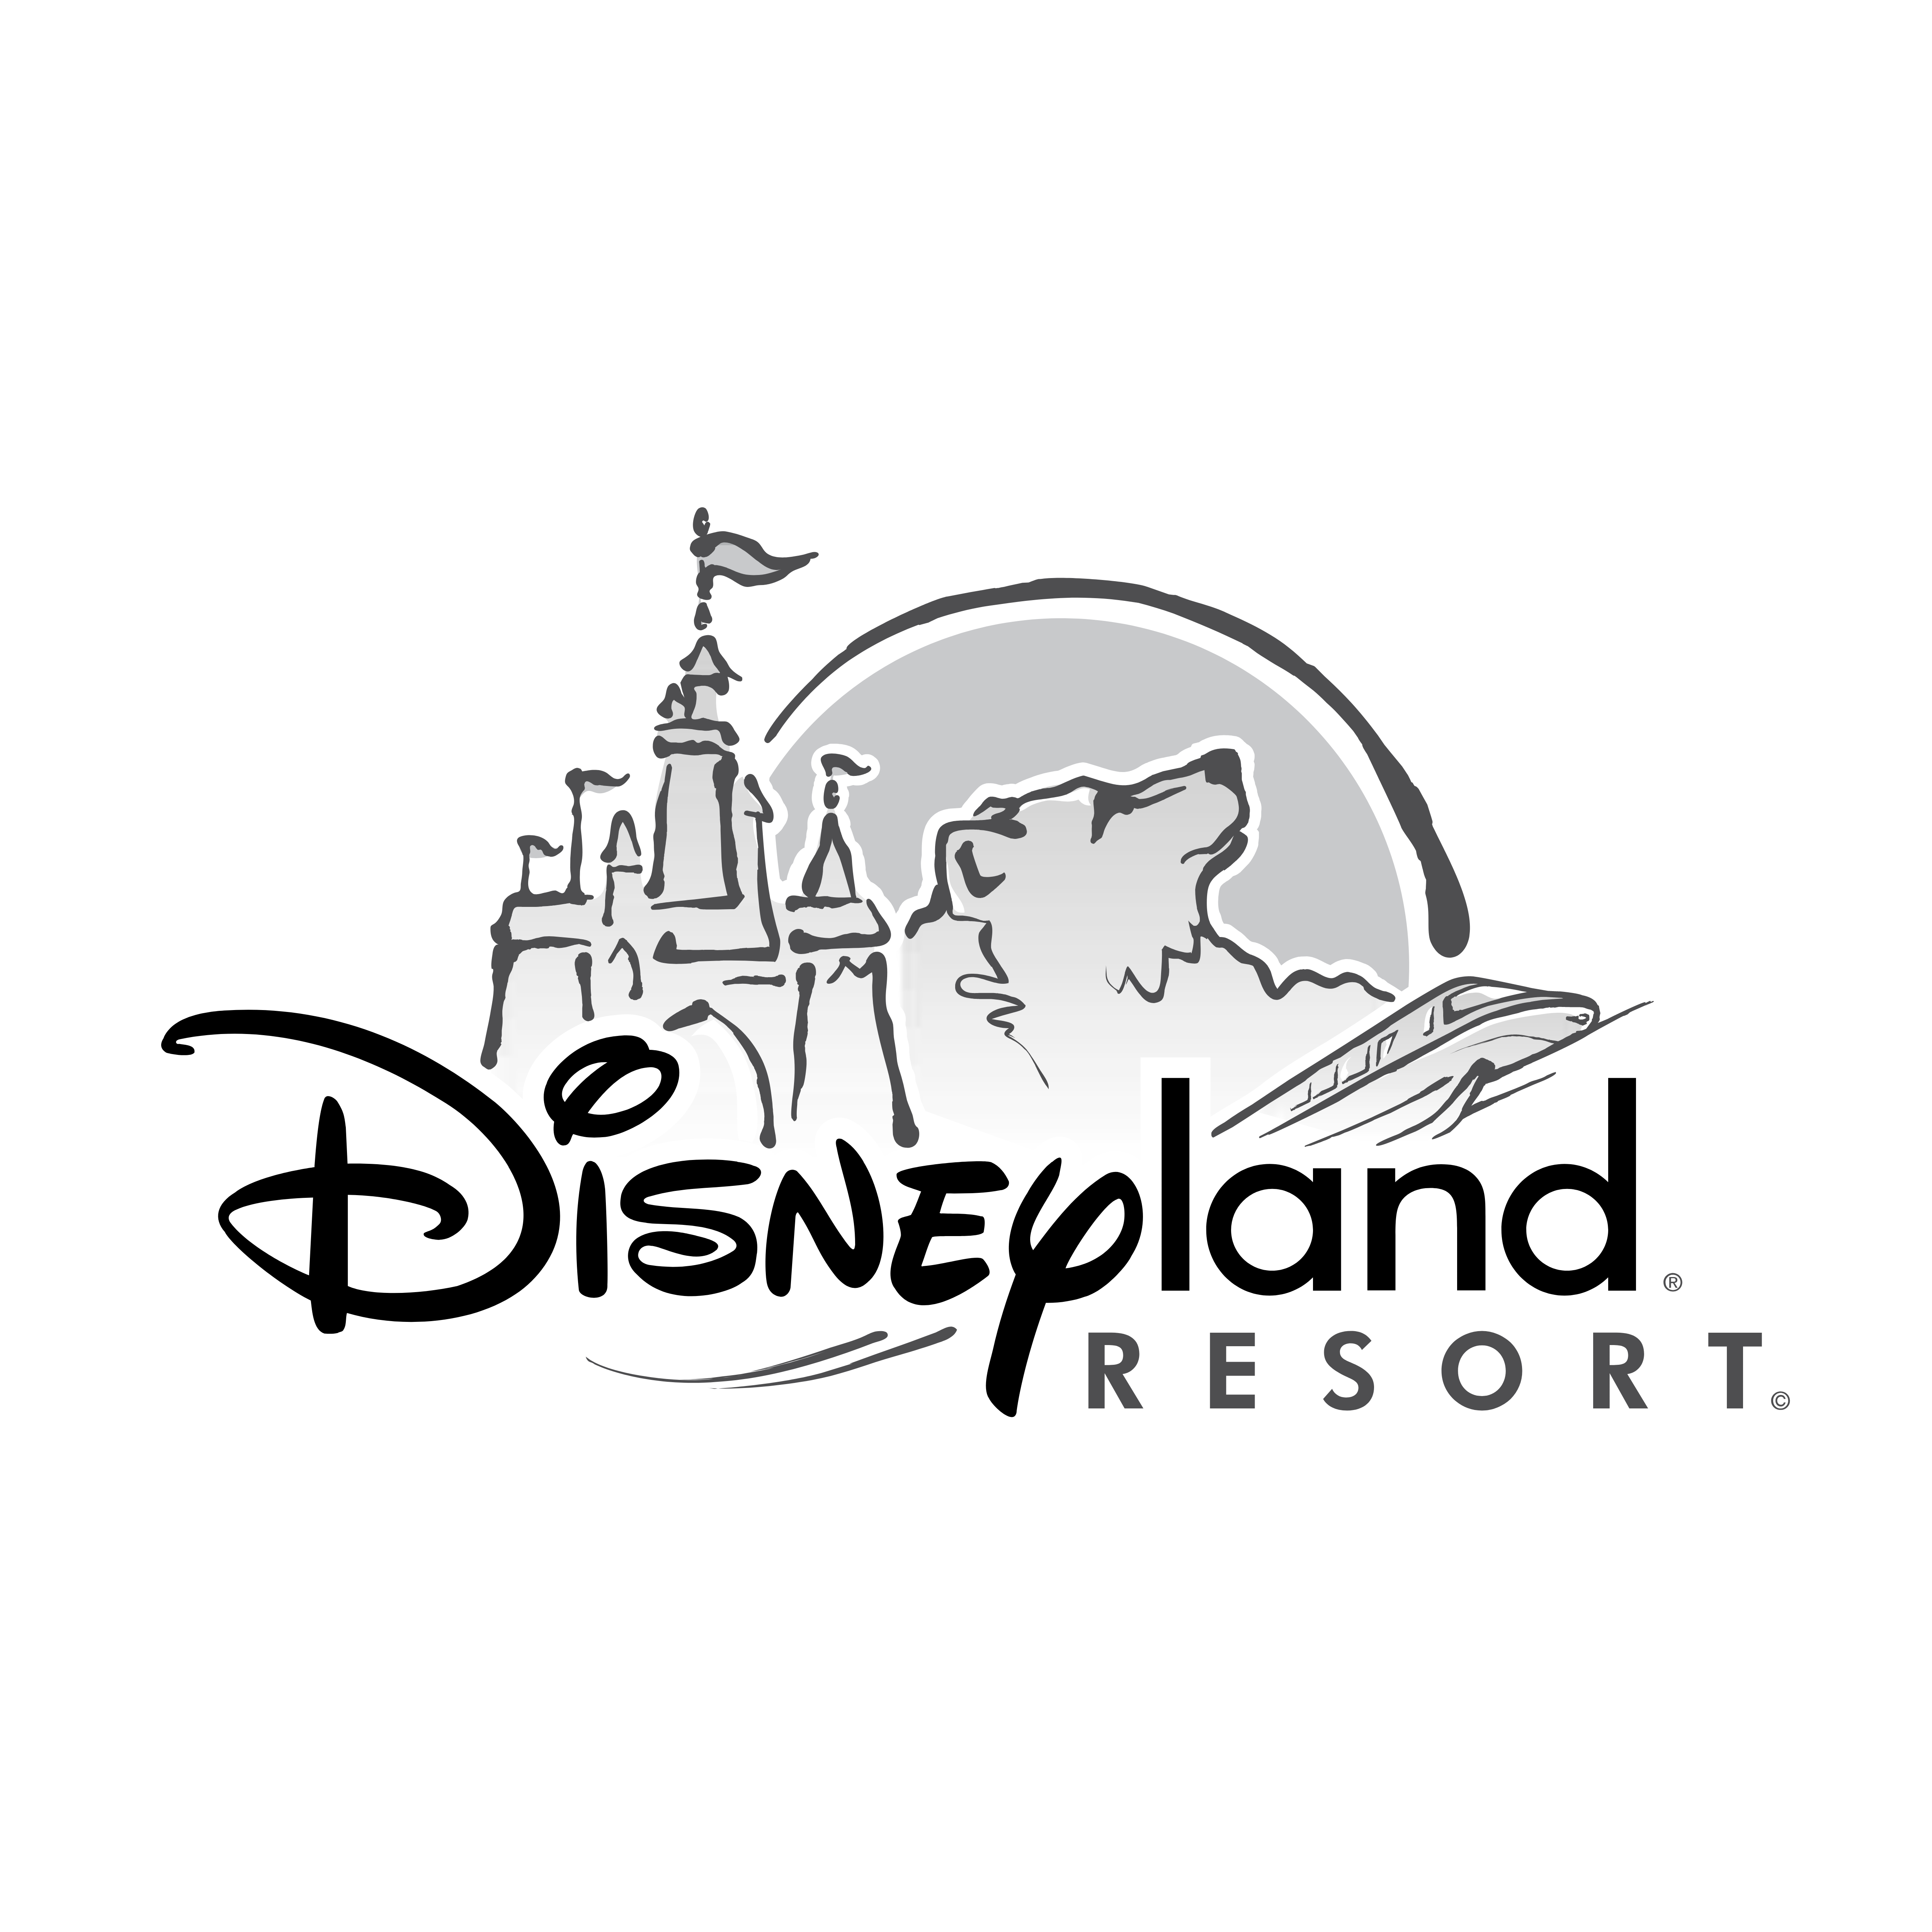 Disneyland Resort Logos Download